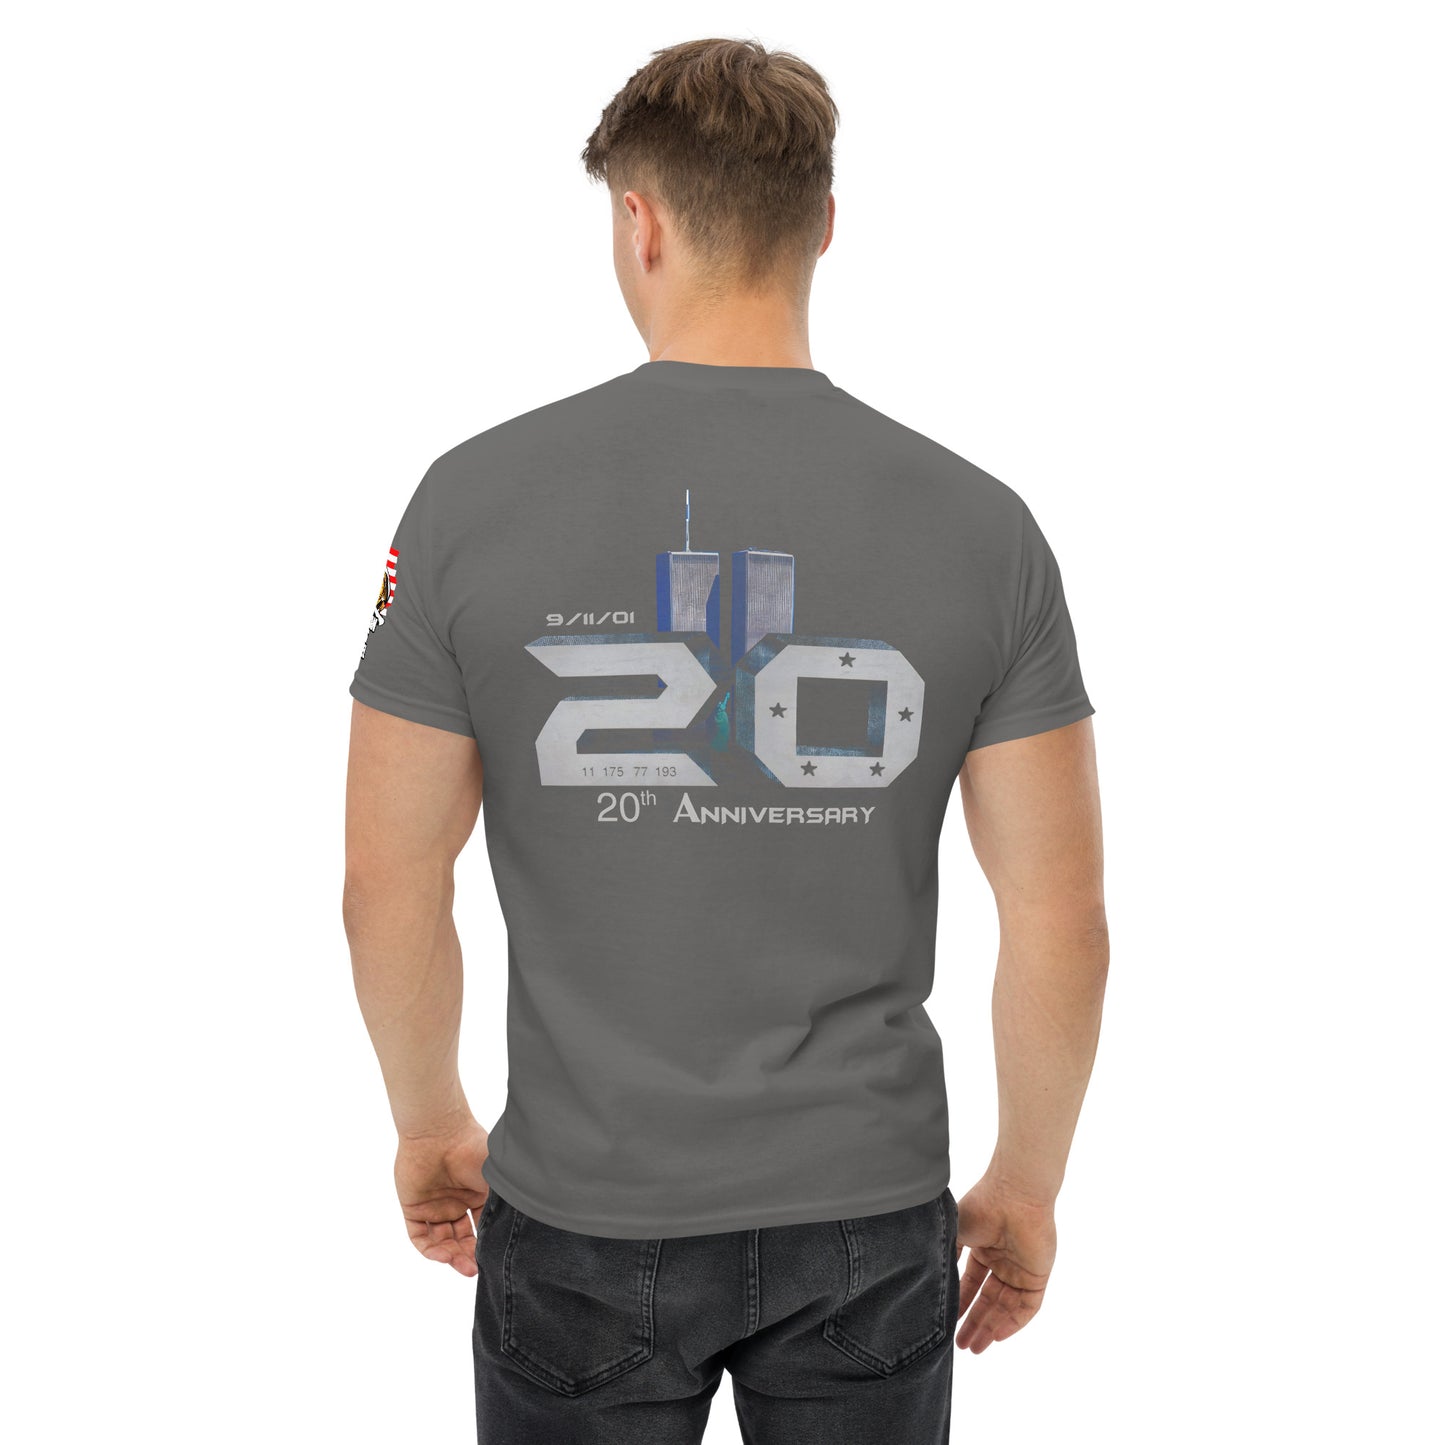 9-11-2001 -20th Anniversary Shirt